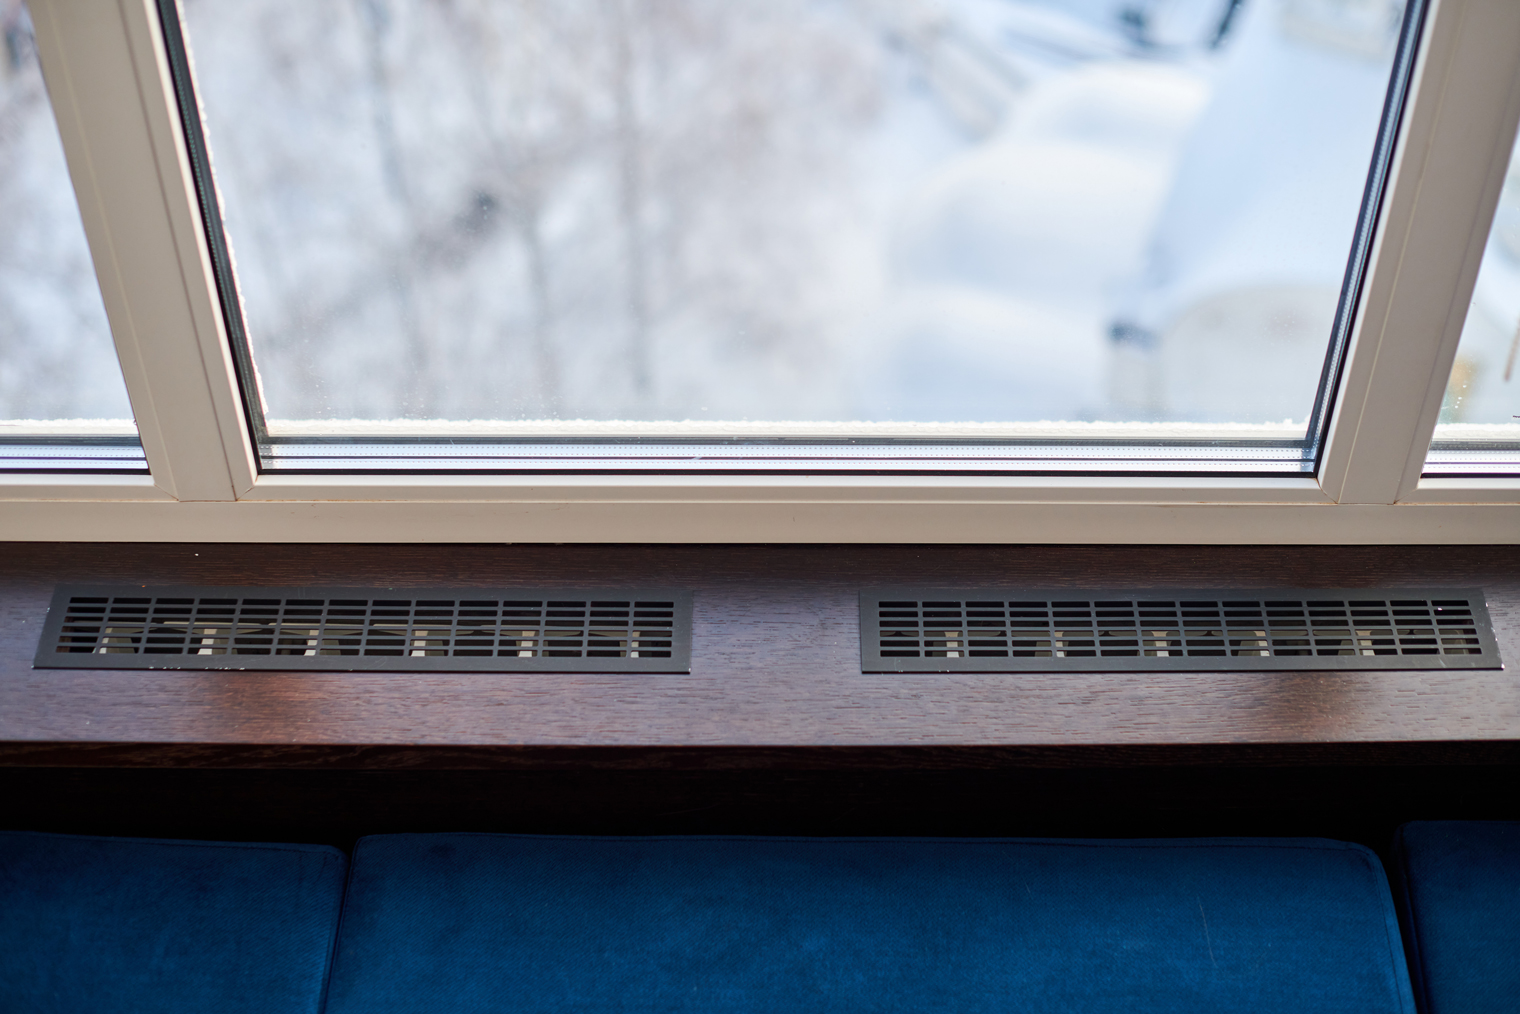 Вентиляционную решетку нужно устанавливать всегда, когда батарея закрывается столешницей. Фотография: travelarium.ph / Shutterstock / FOTODOM